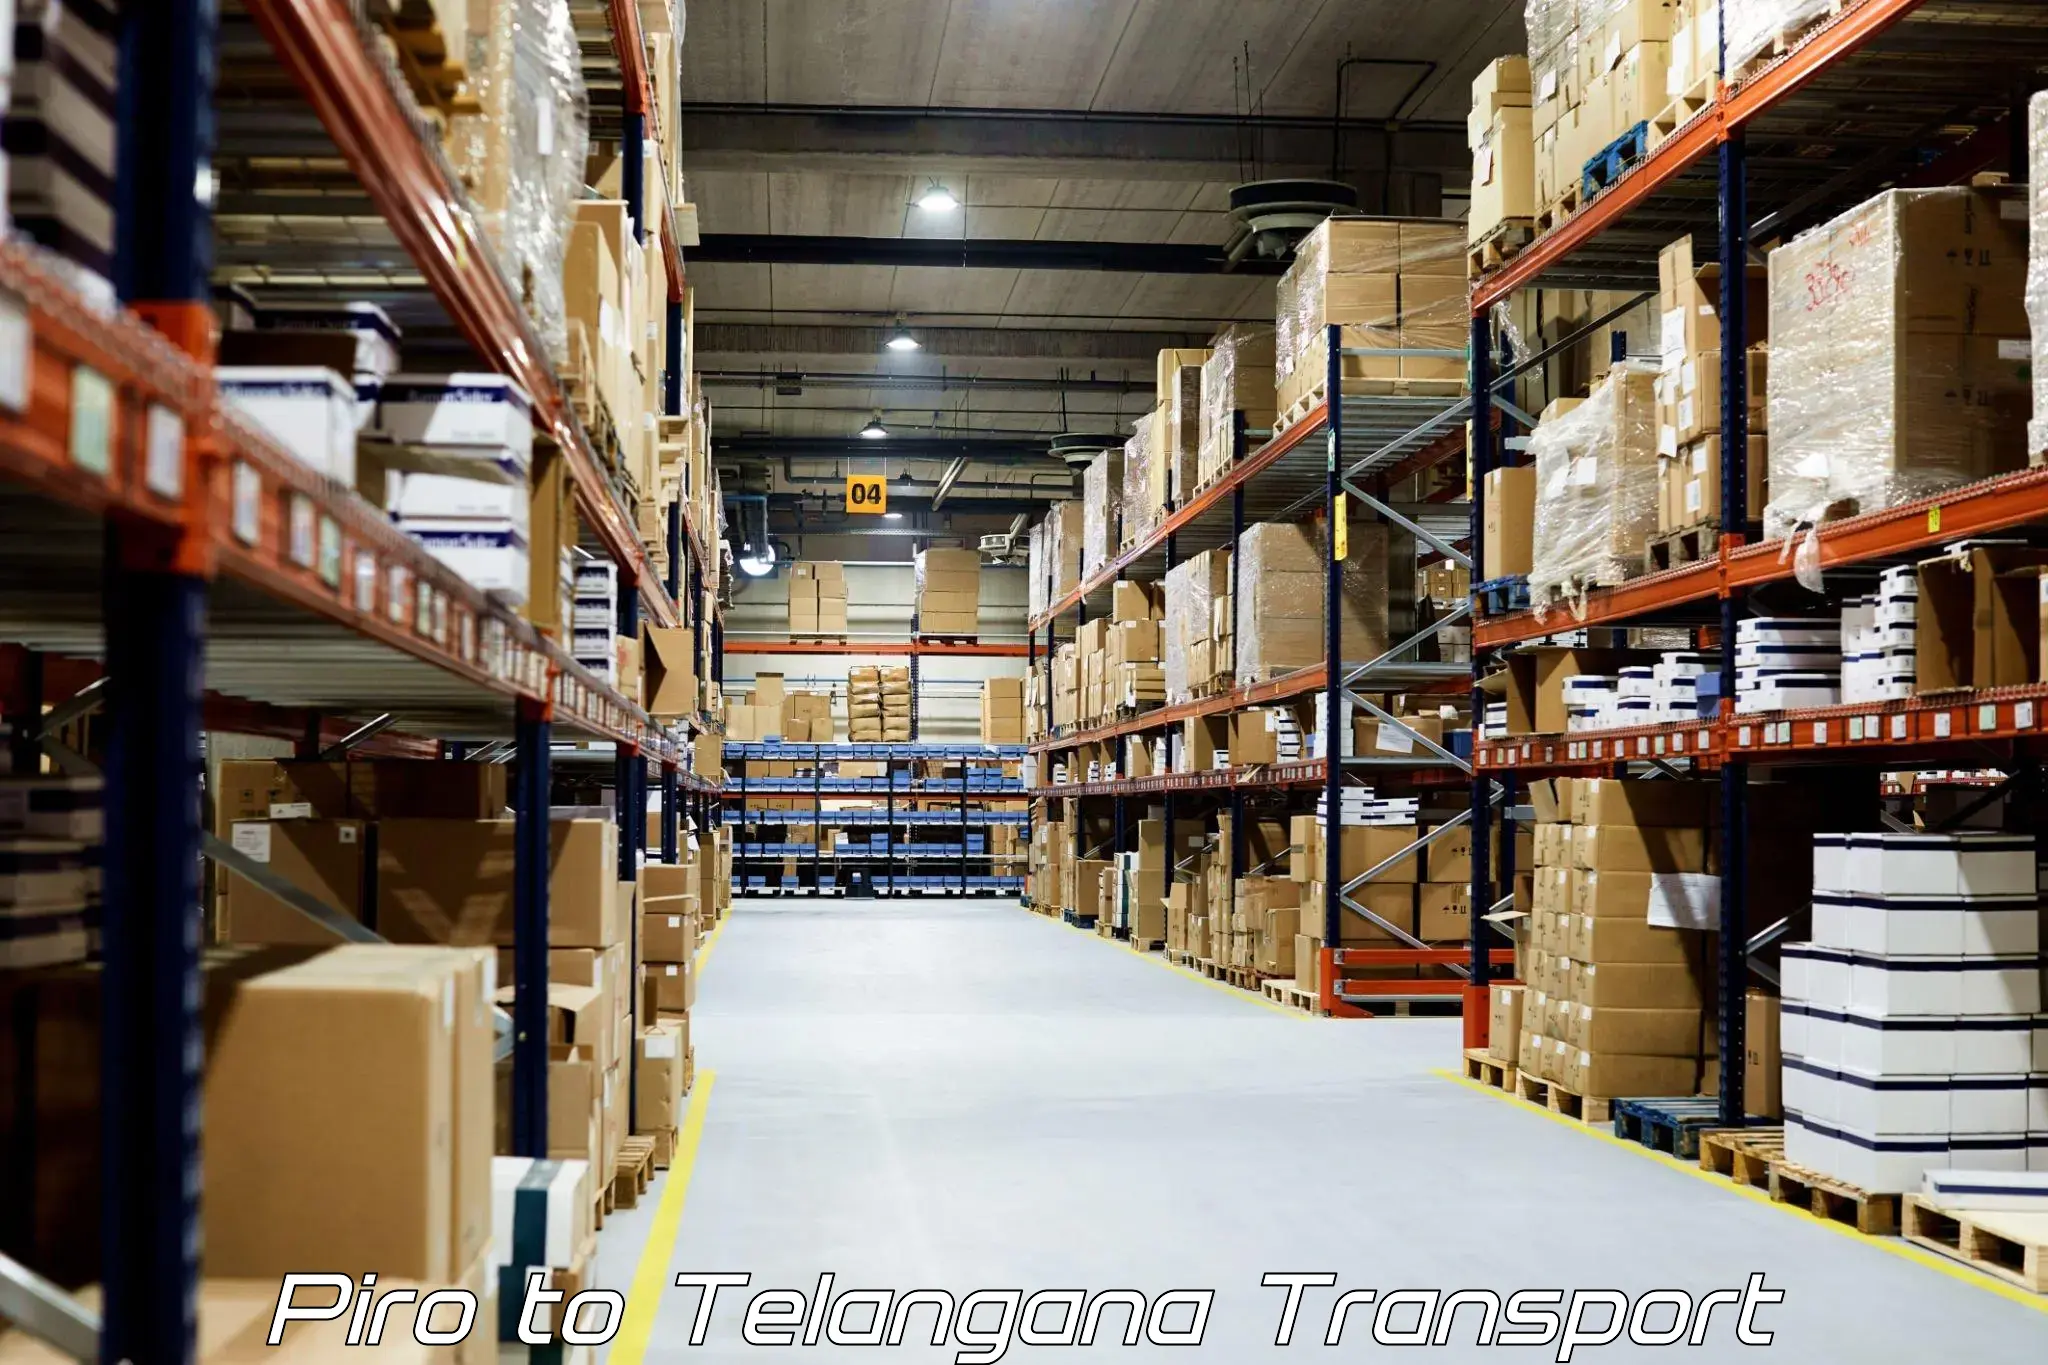 Cargo transport services in Piro to Narmetta